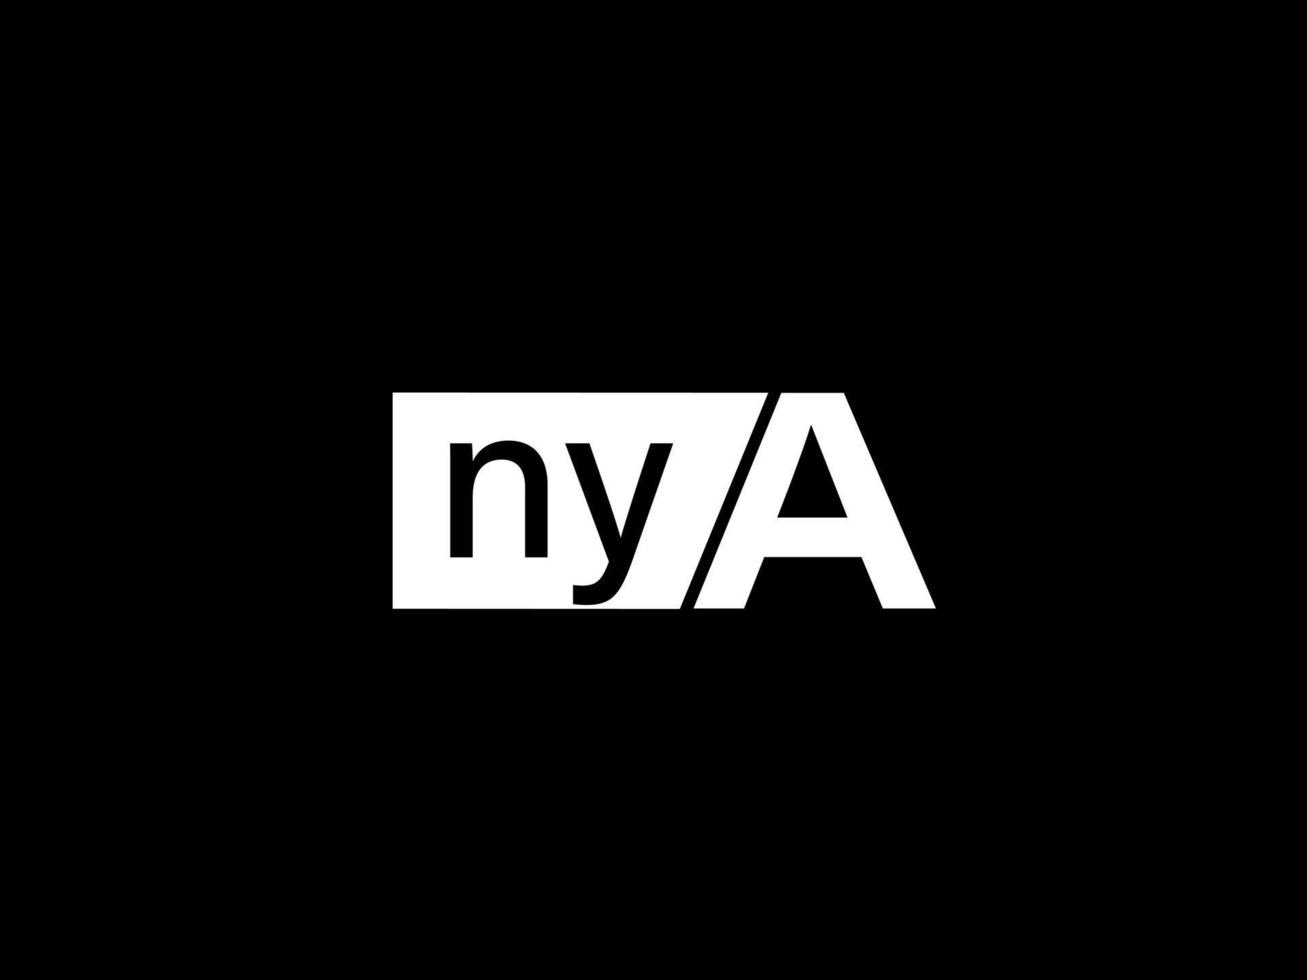 Nya-Logo und Grafikdesign Vektorgrafiken, Symbole isoliert auf schwarzem Hintergrund vektor